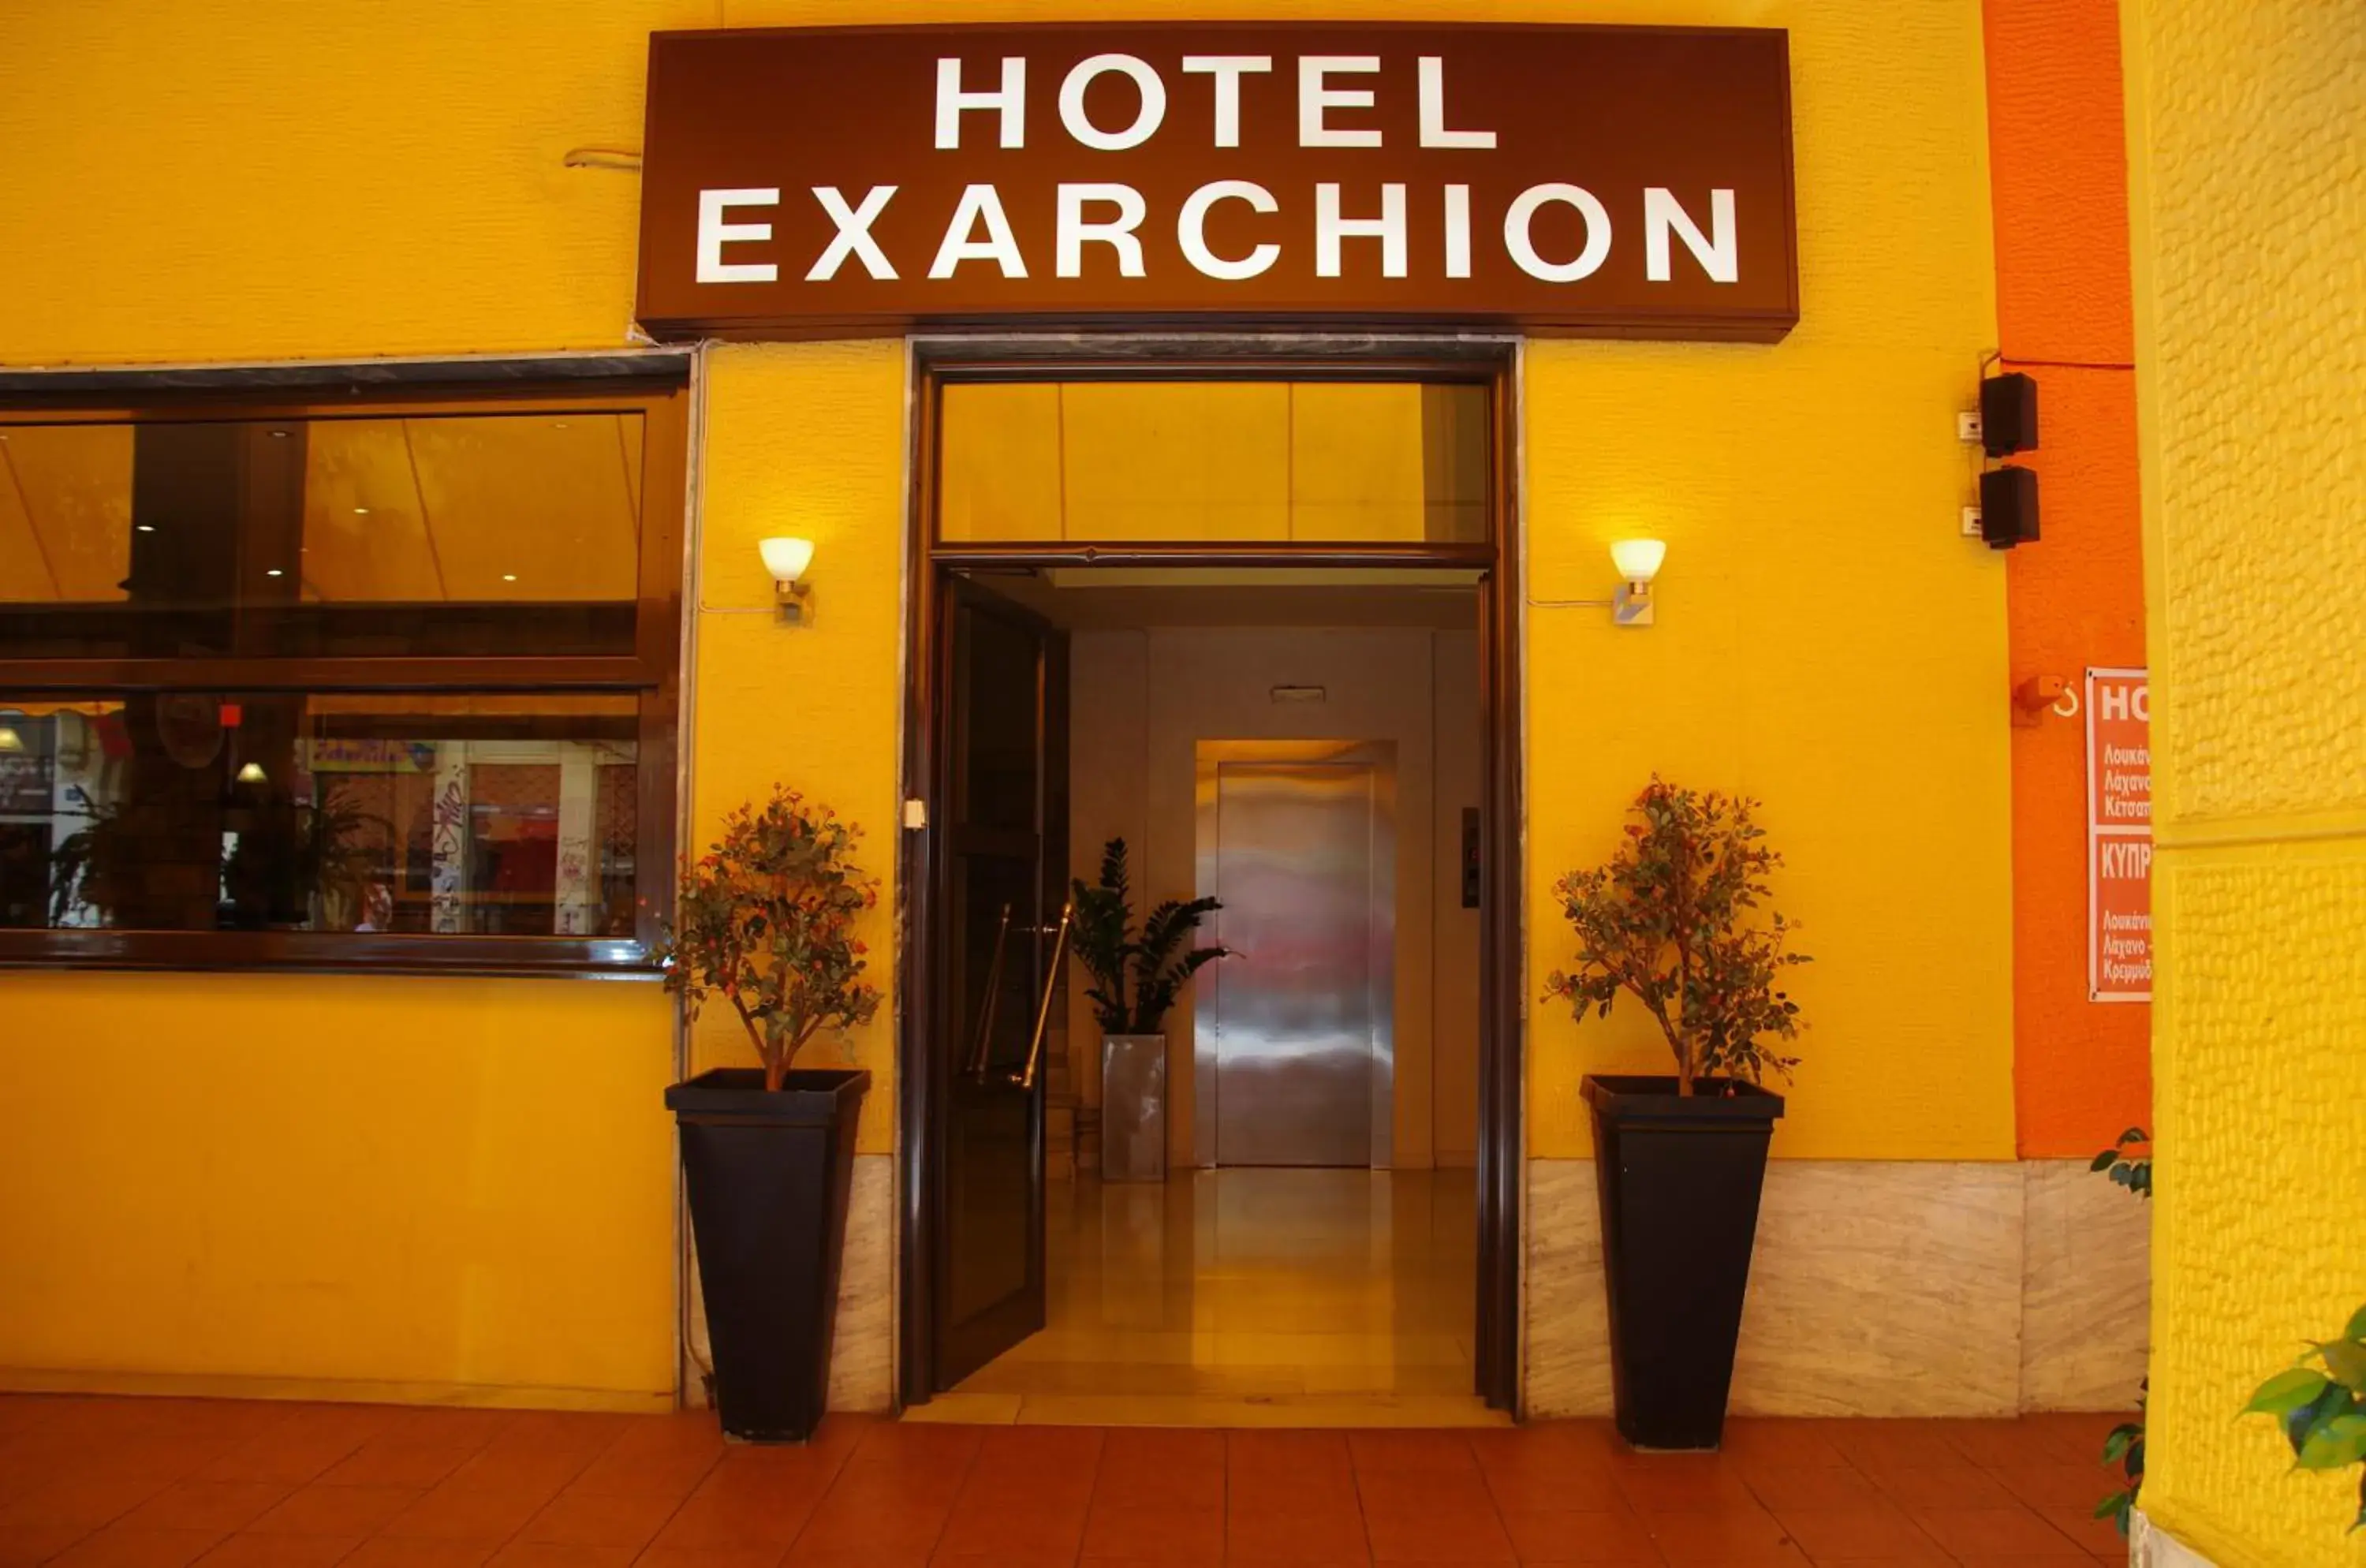 Facade/entrance in Exarchion Hotel